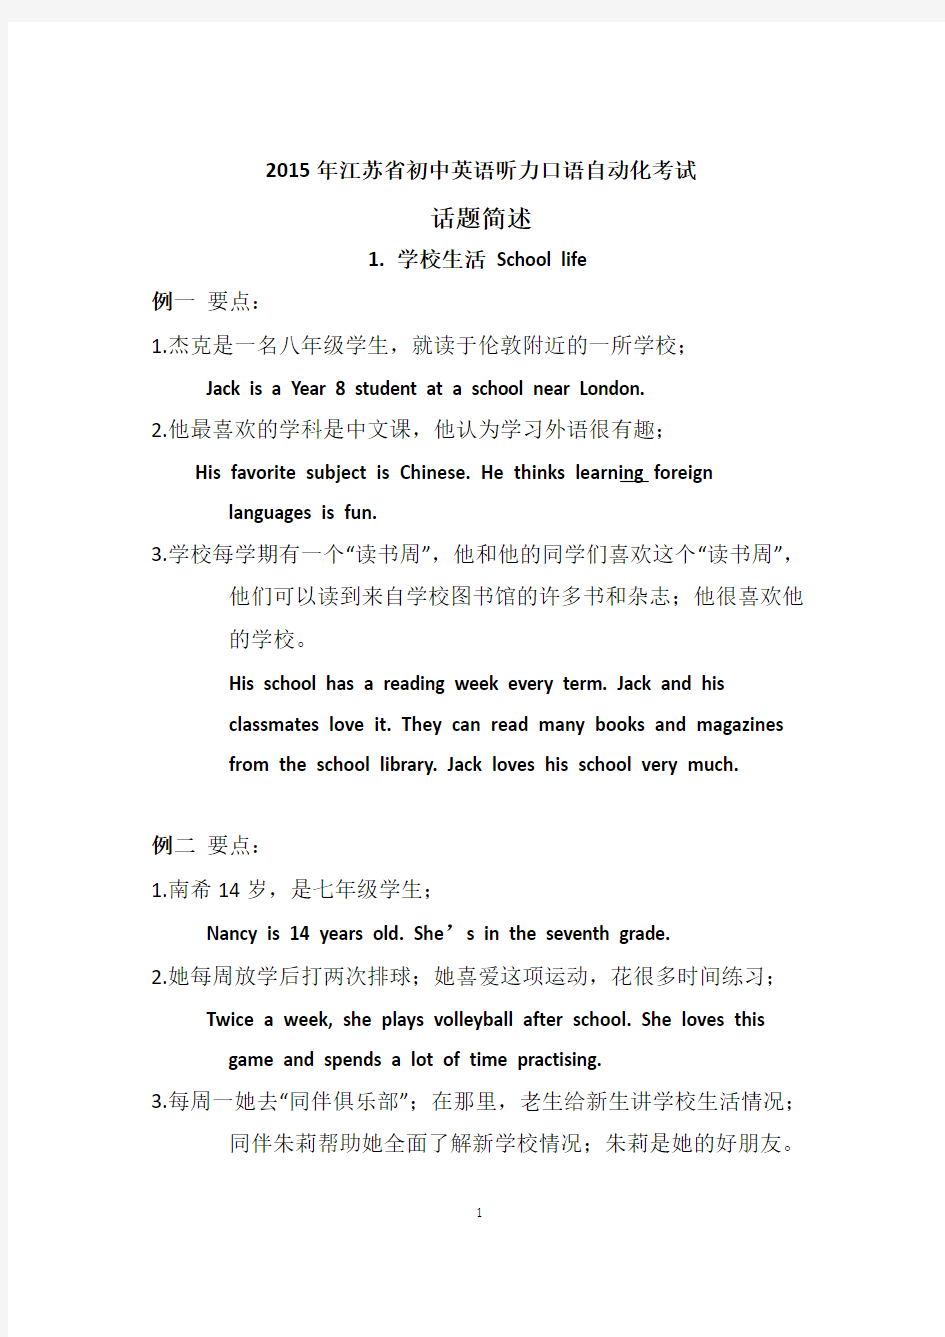 2015年江苏省初中英语听力口语自动化考试纲要·话题简述(中英文对照)